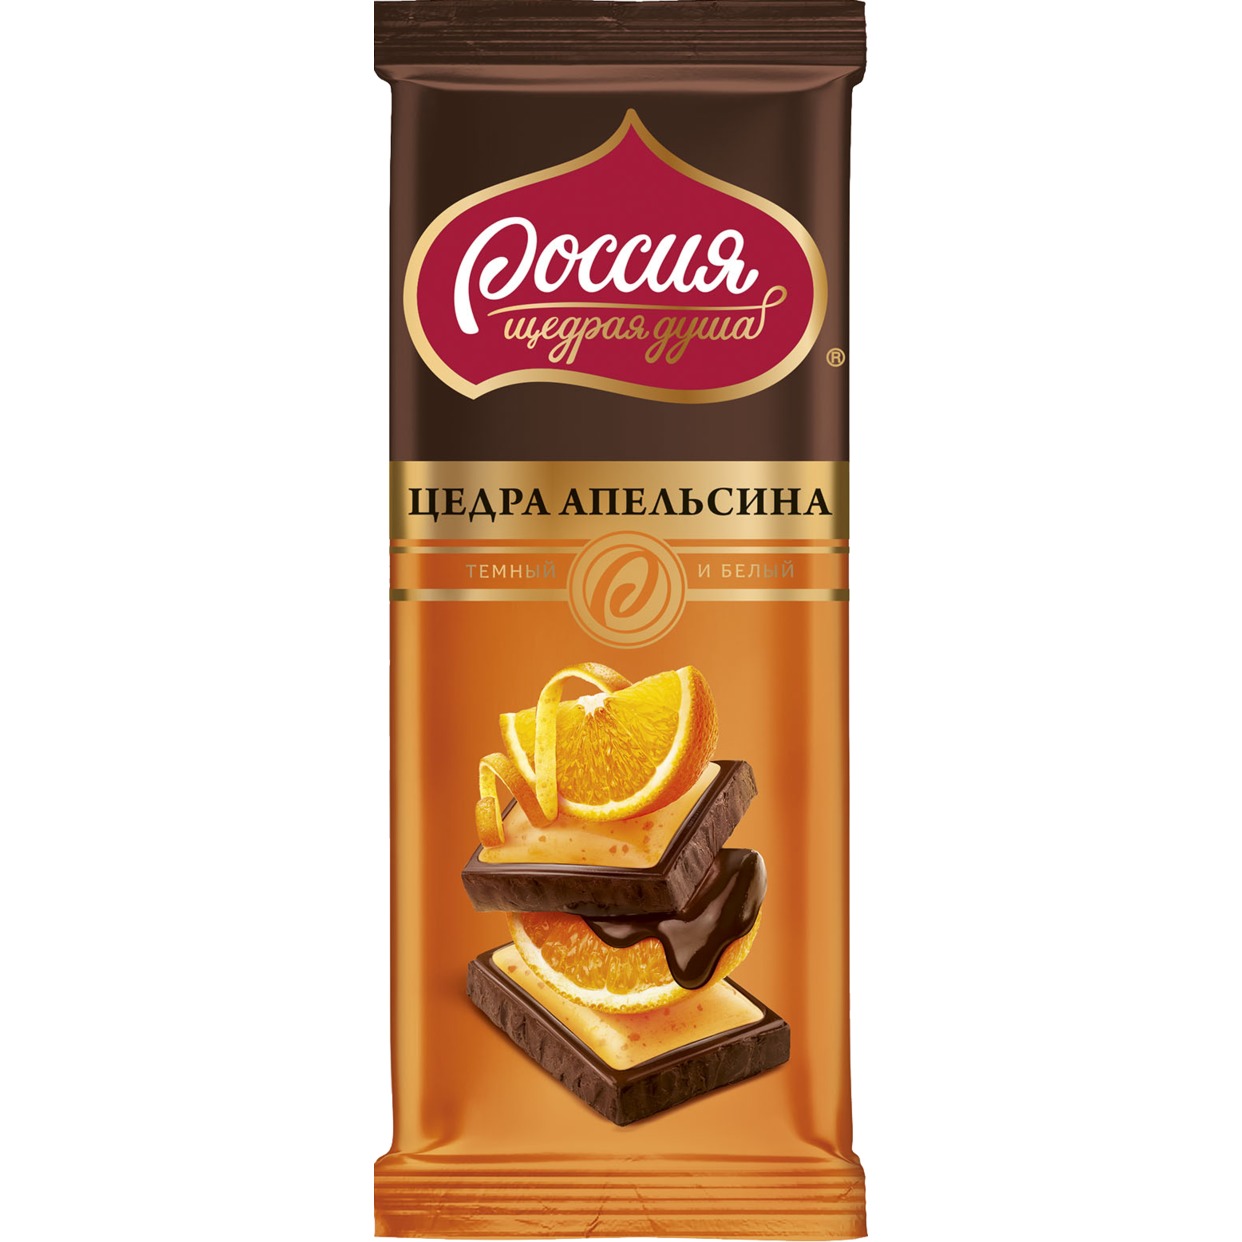 Темный шоколад и белый шоколад с цедрой апельсина, 85 г по акции в Пятерочке